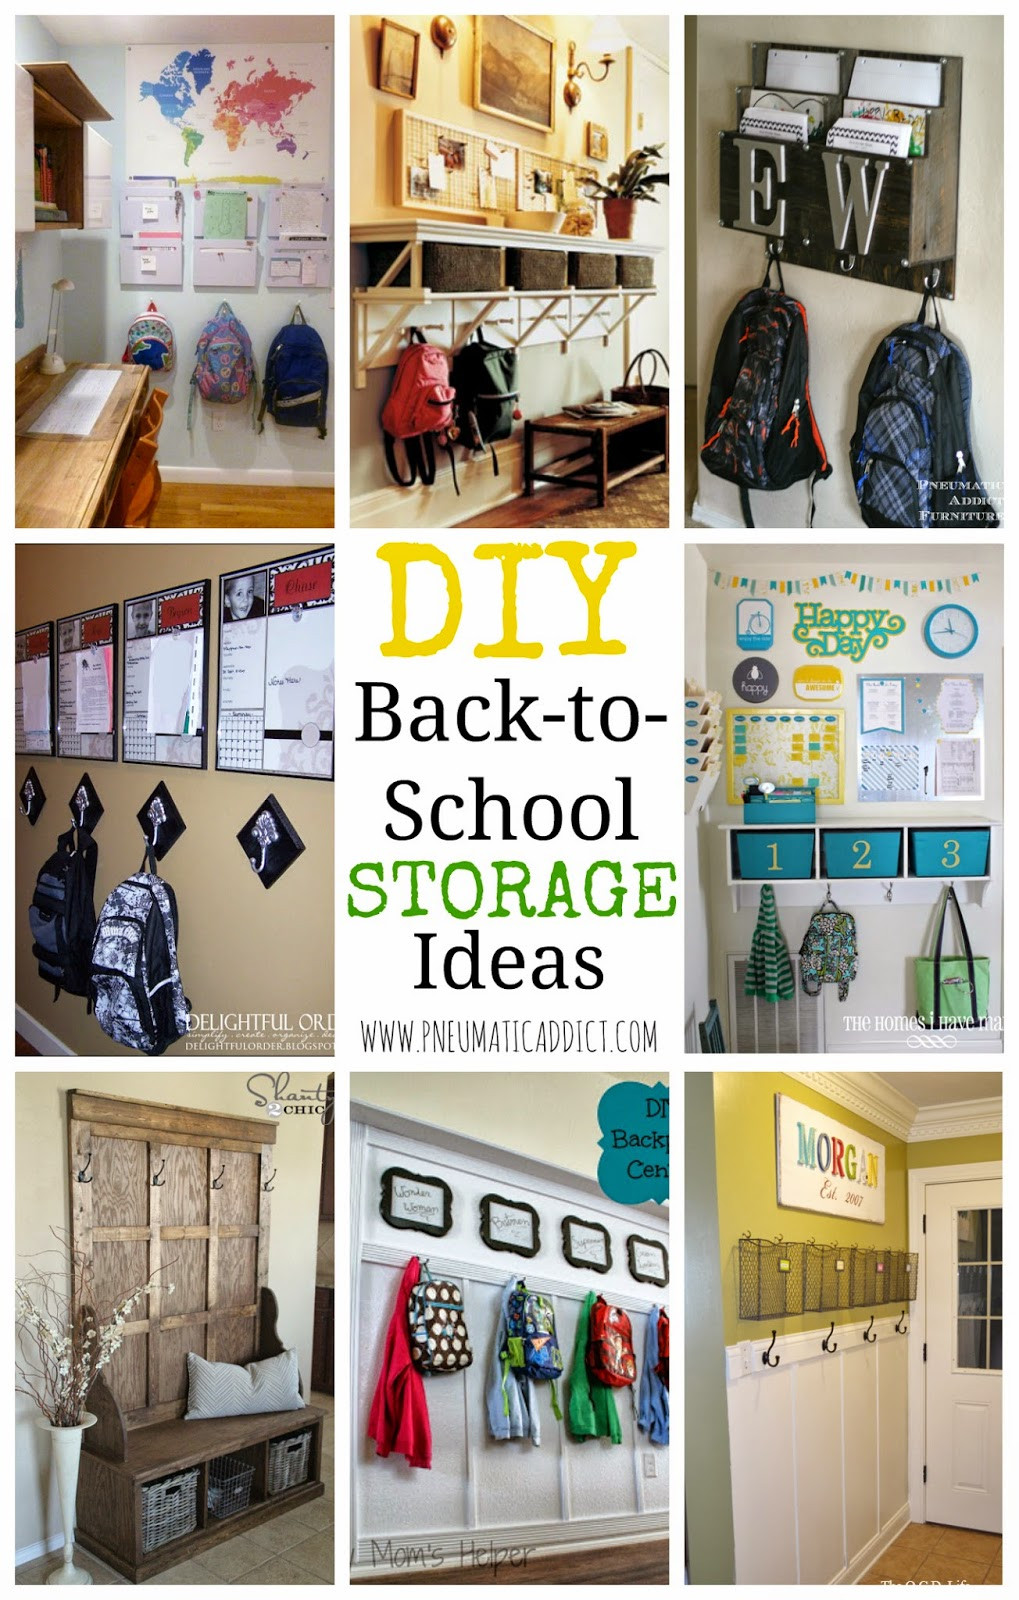 DIY School Organization Ideas
 DIY Back to School Storage Ideas